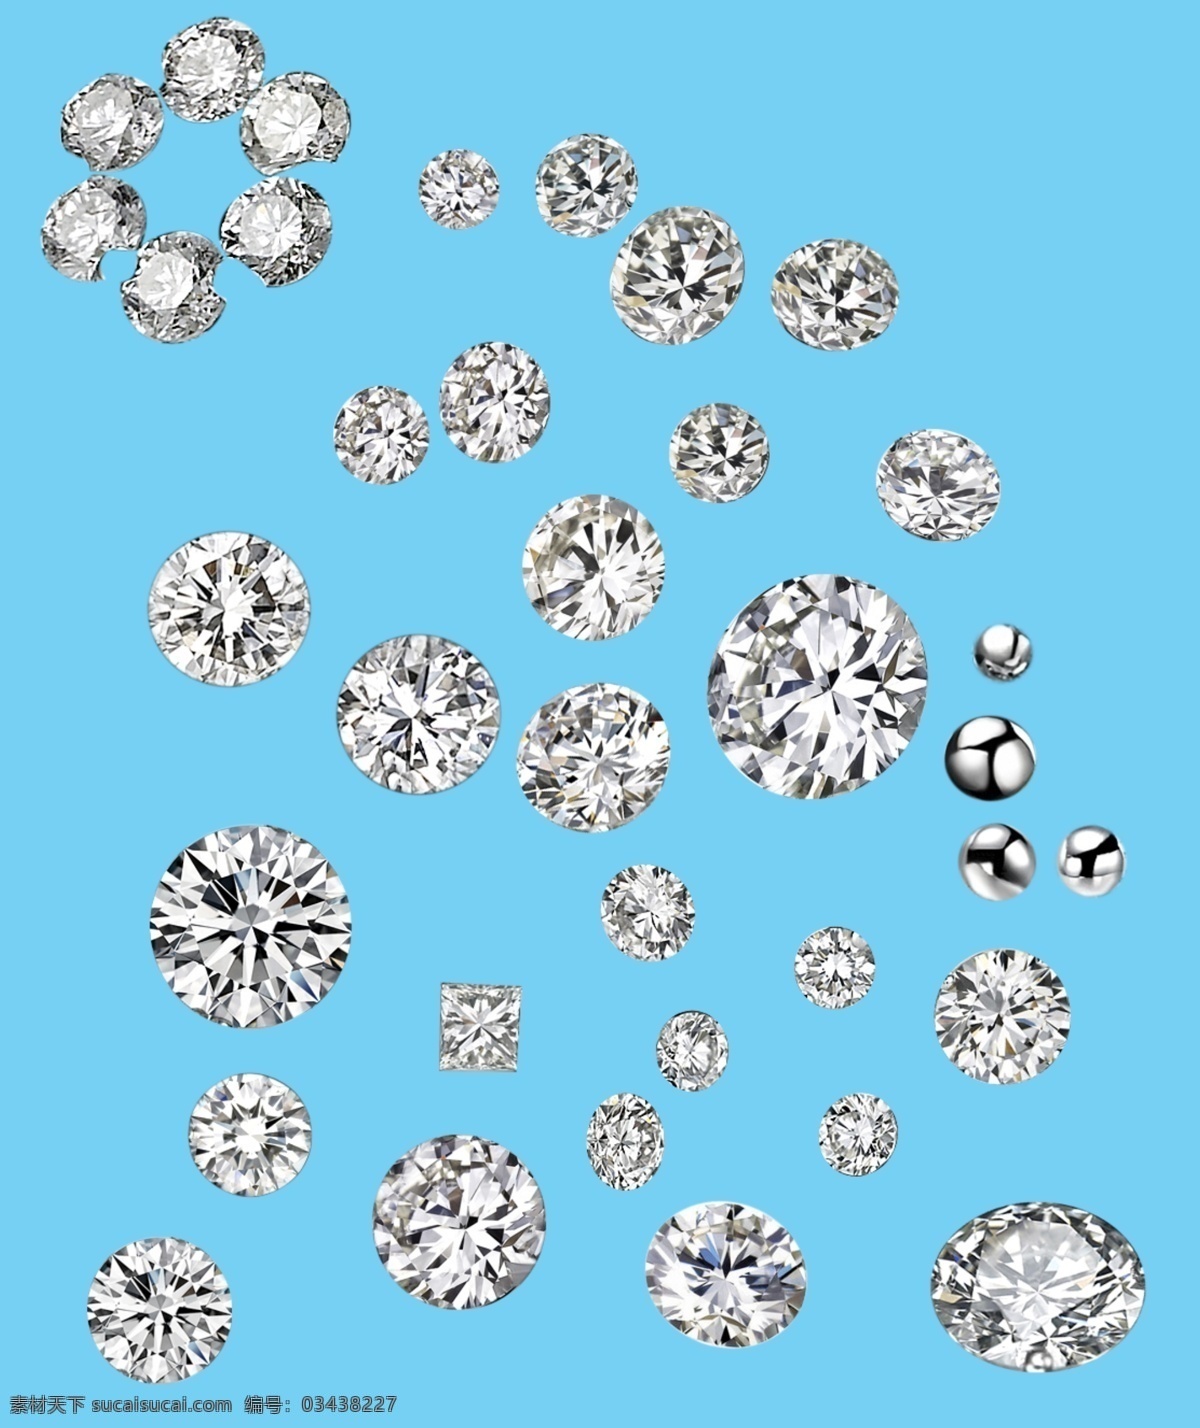 钻石素材 钻石 宝石 宝石素材